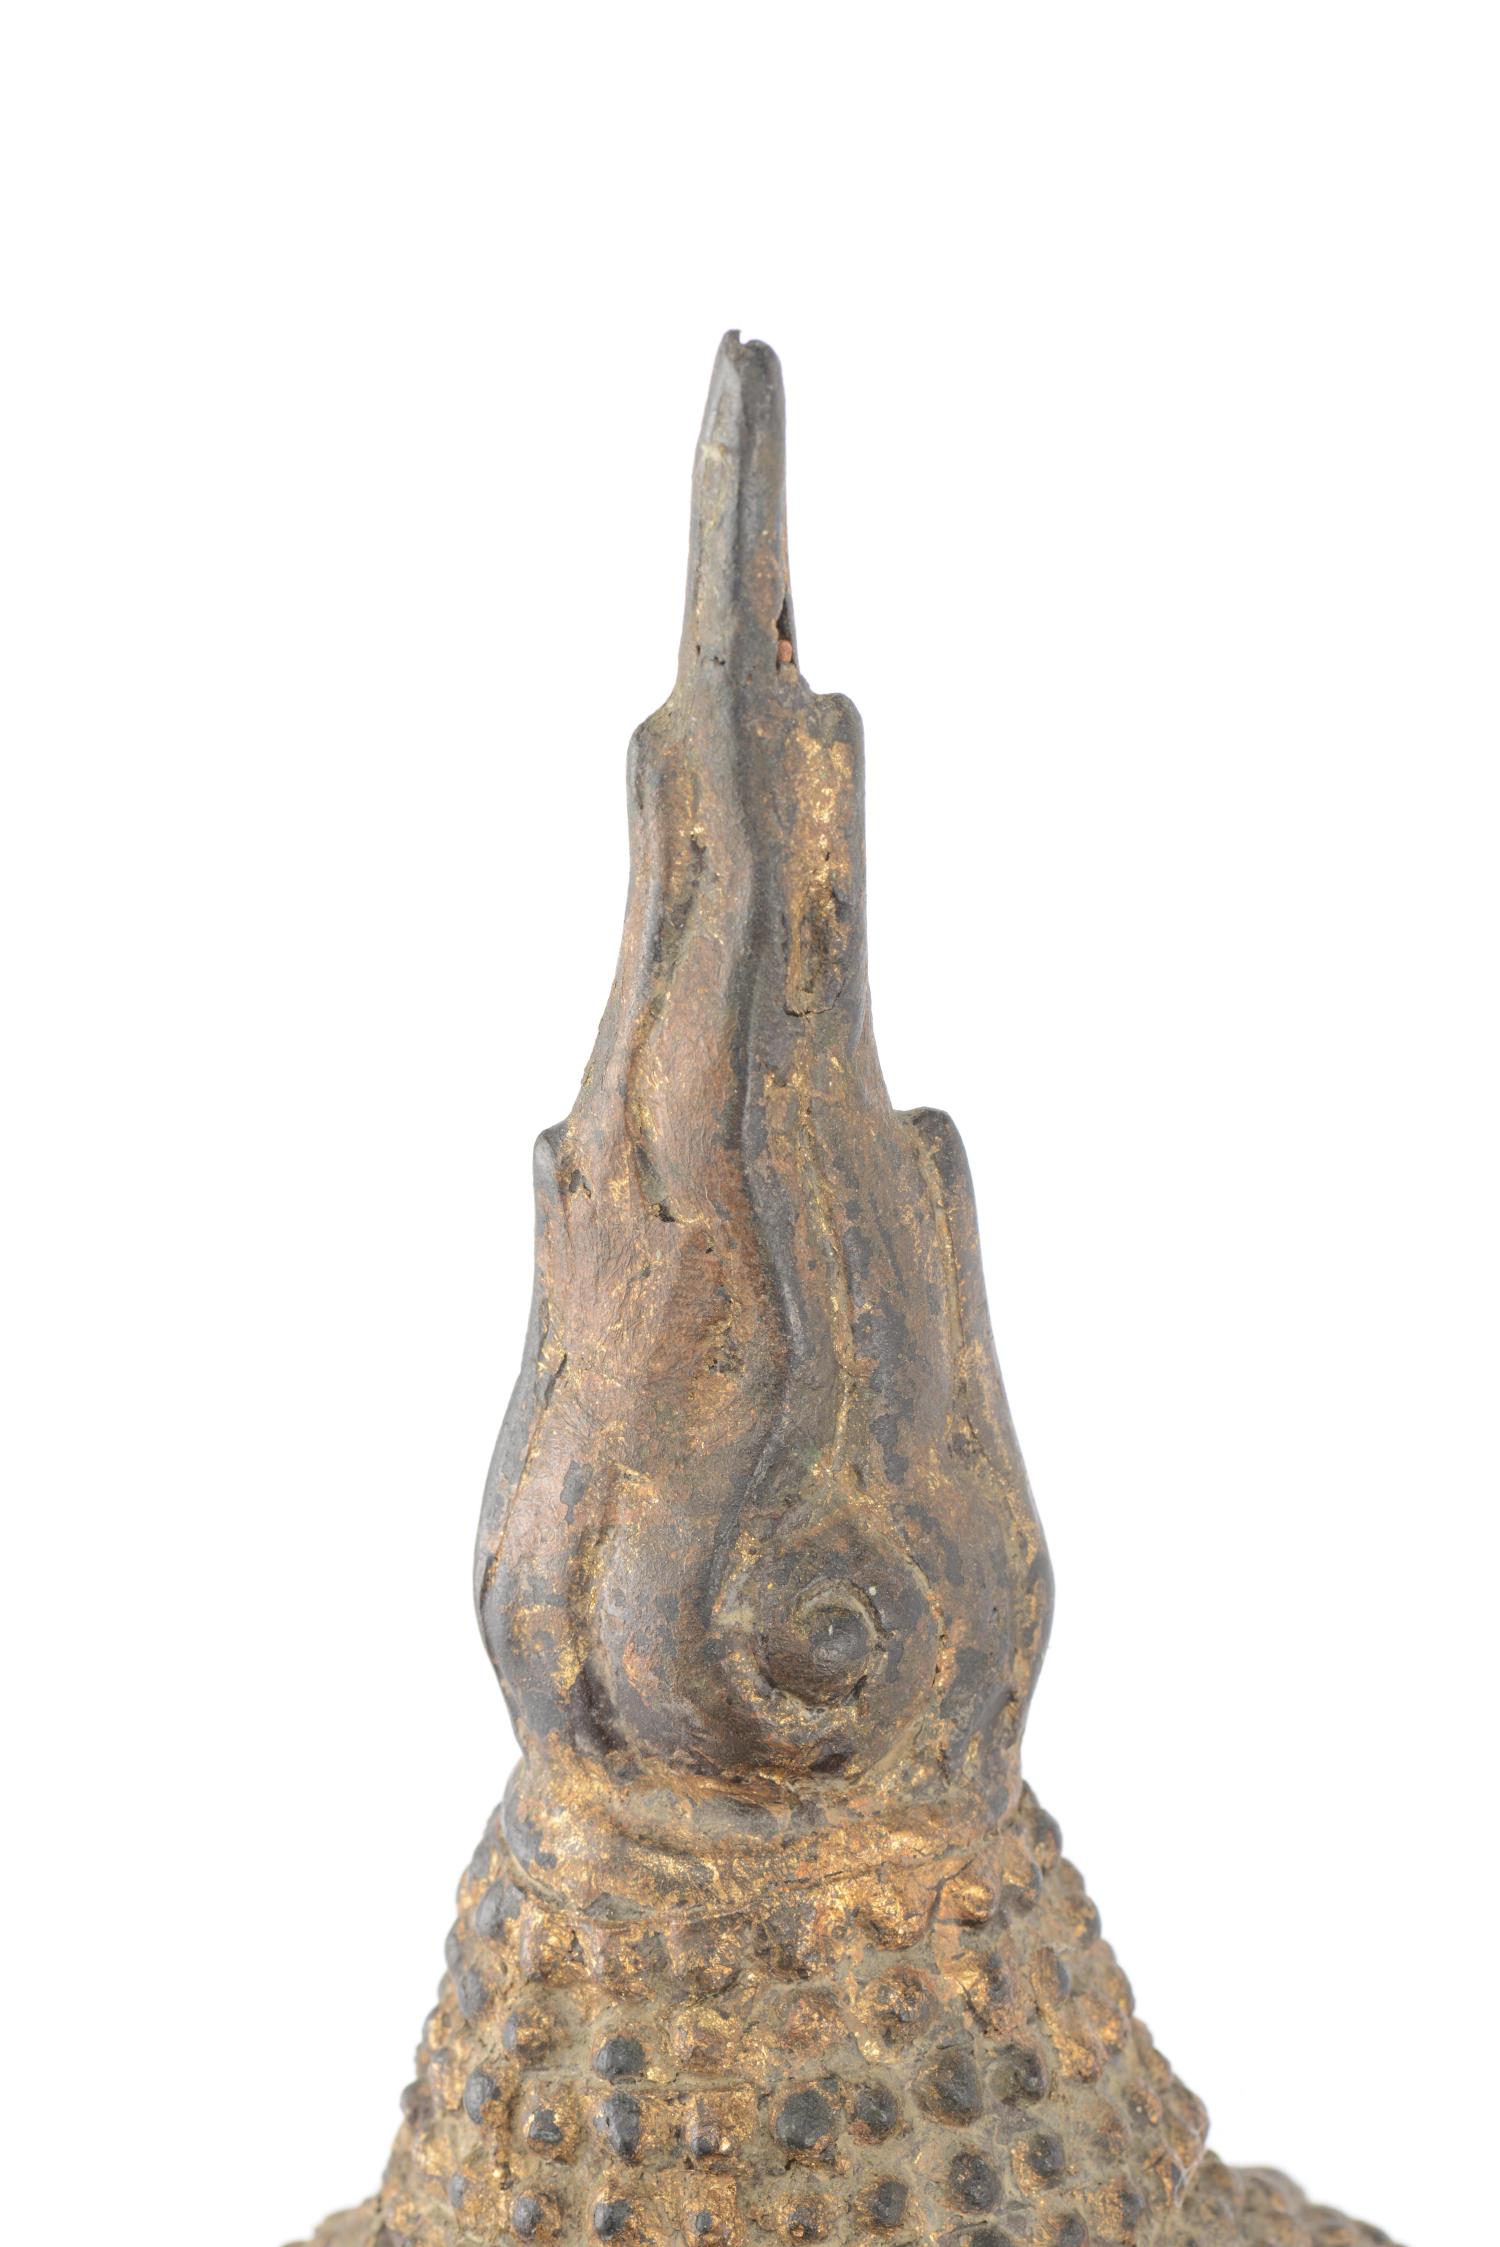 THA&amp;Ouml;LANDE, Paire de t&amp;ecirc;tes de Bouddha en bronze laqu&amp;eacute; dor&amp;eacute;, - Image 7 of 9